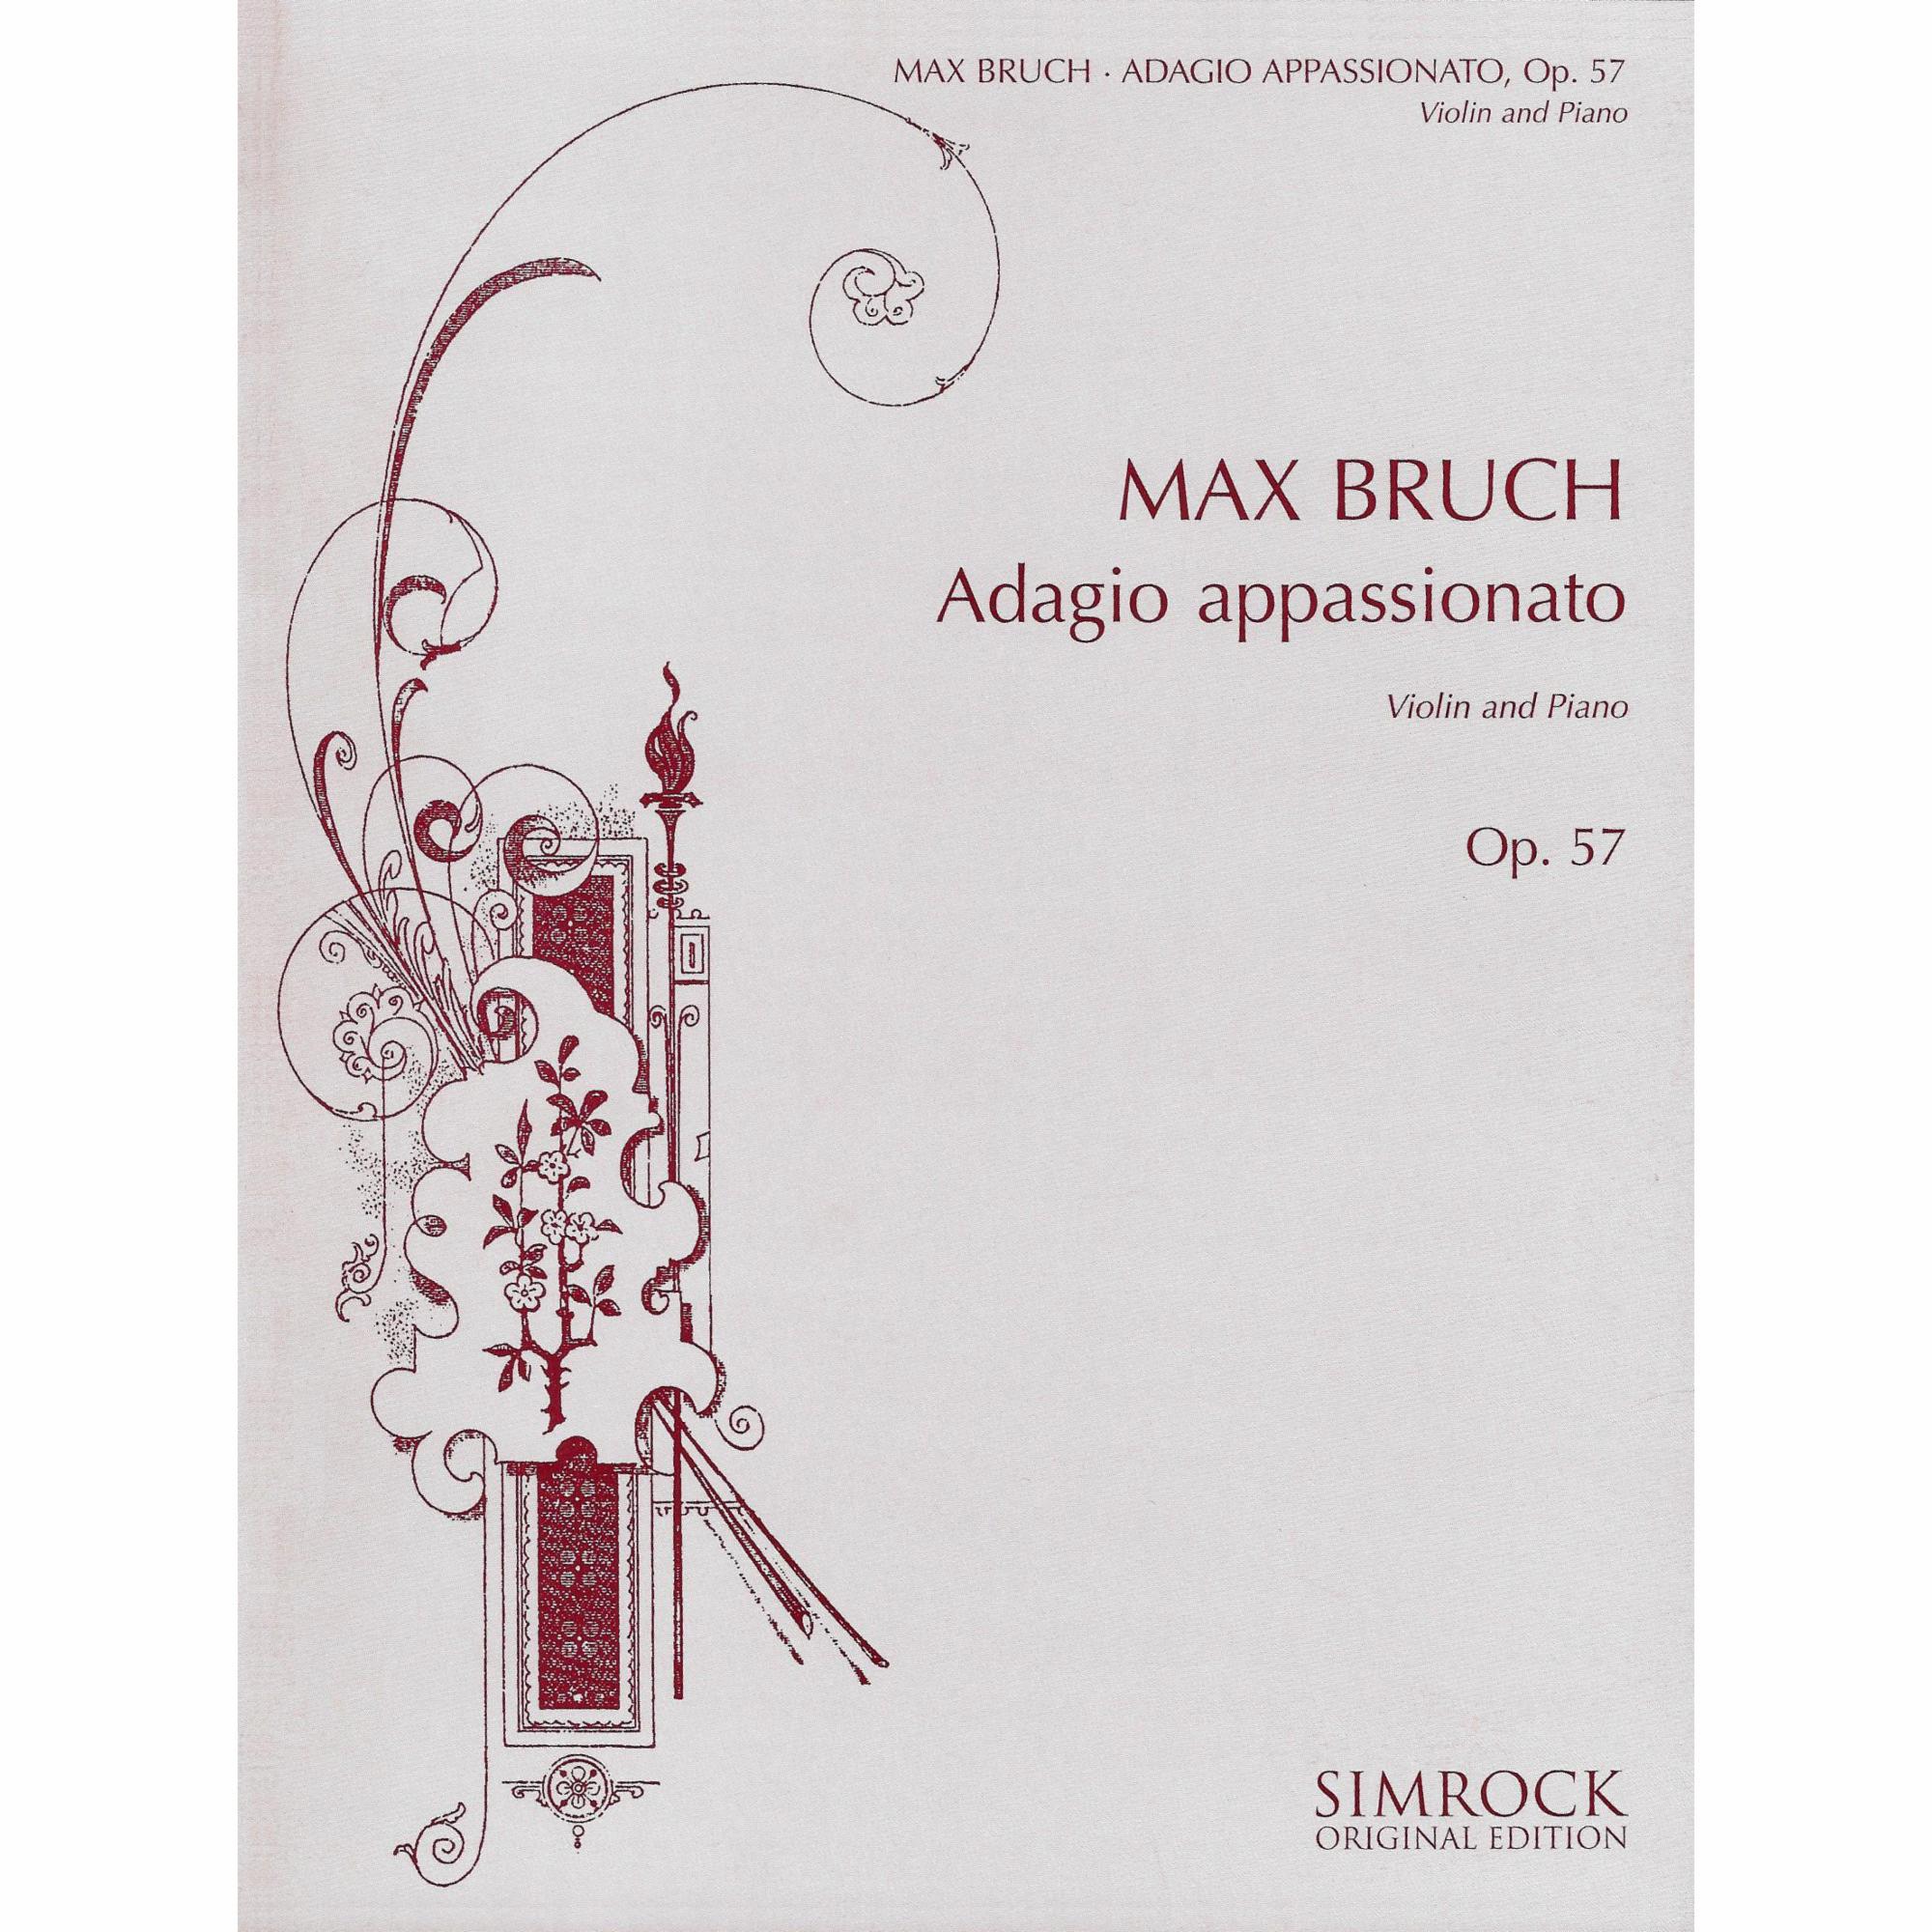 Bruch -- Adagio appassionato, Op. 57 for Violin and Piano